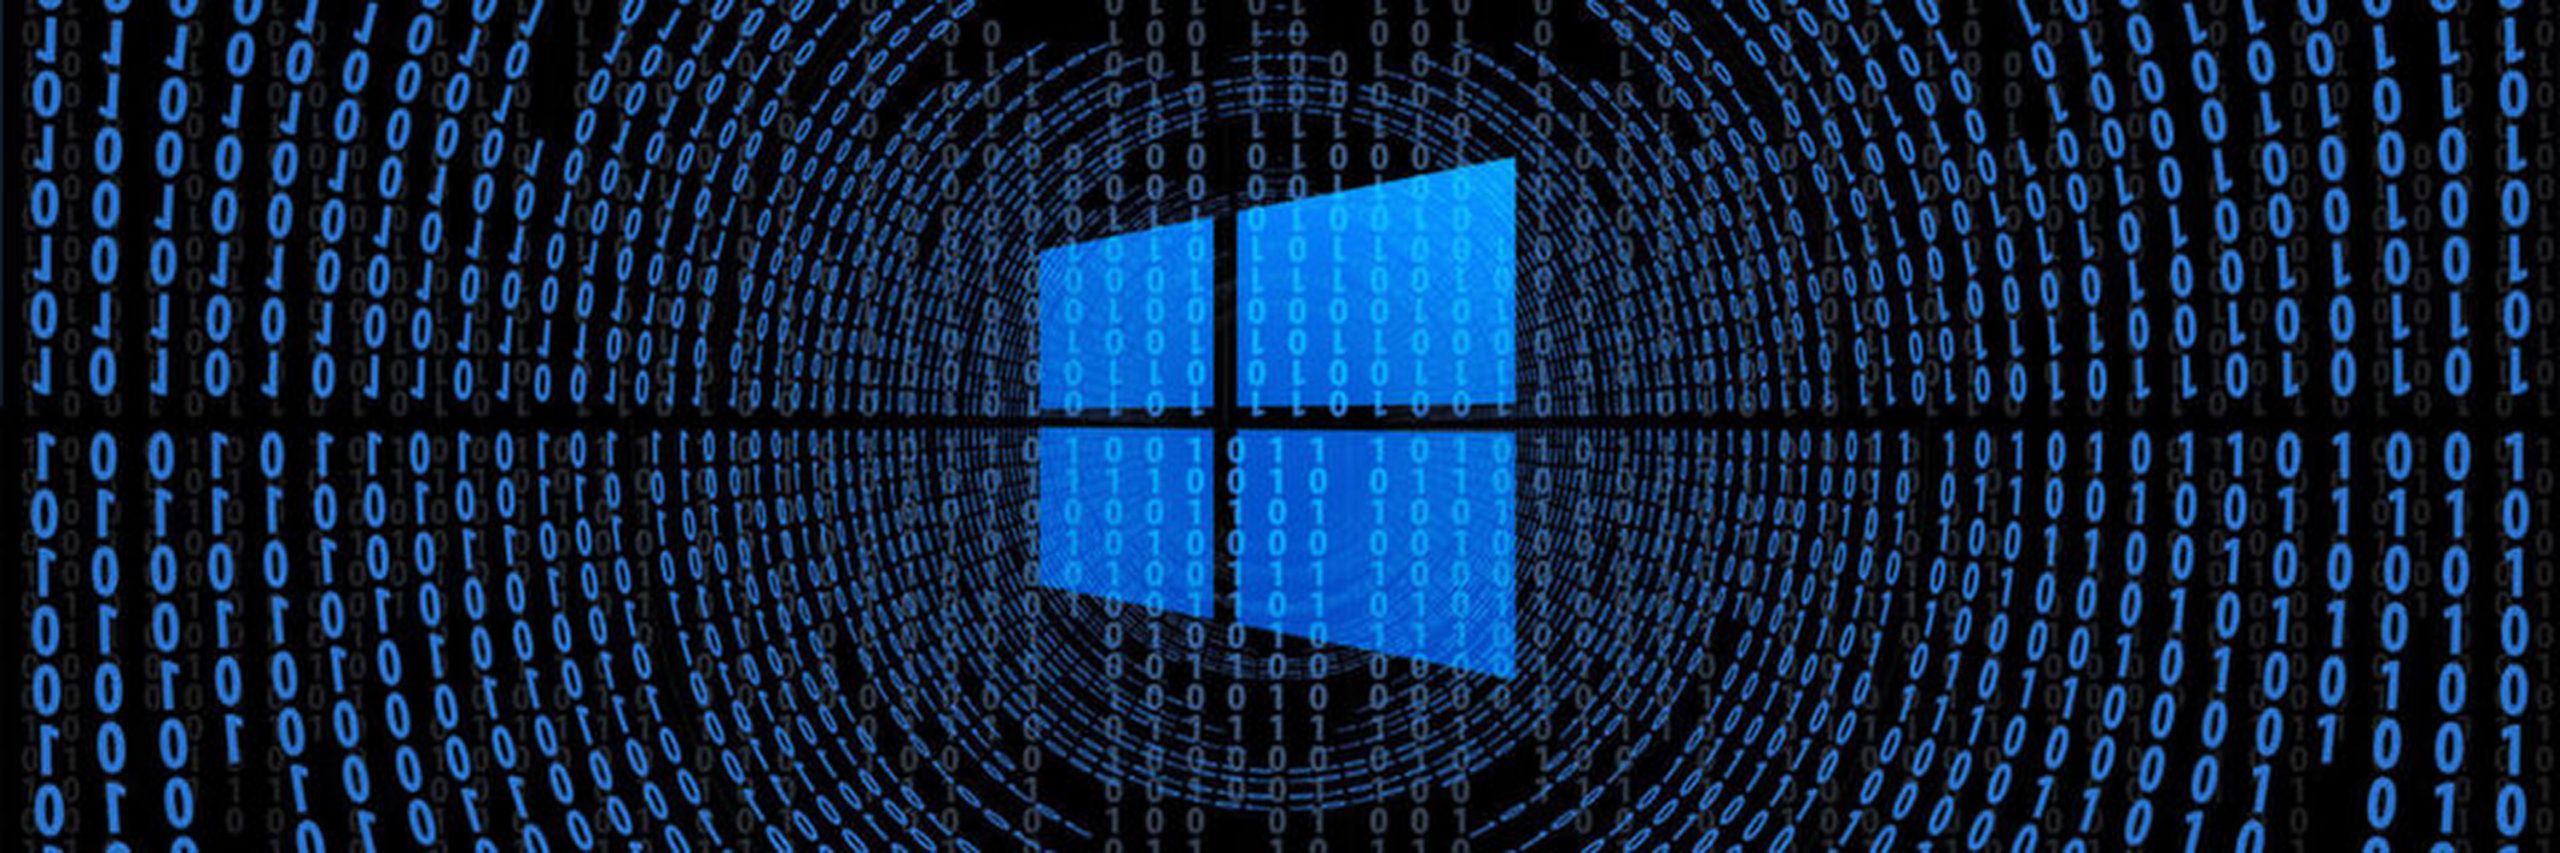 Обнаружена критическая уязвимость в Microsoft MSHTML